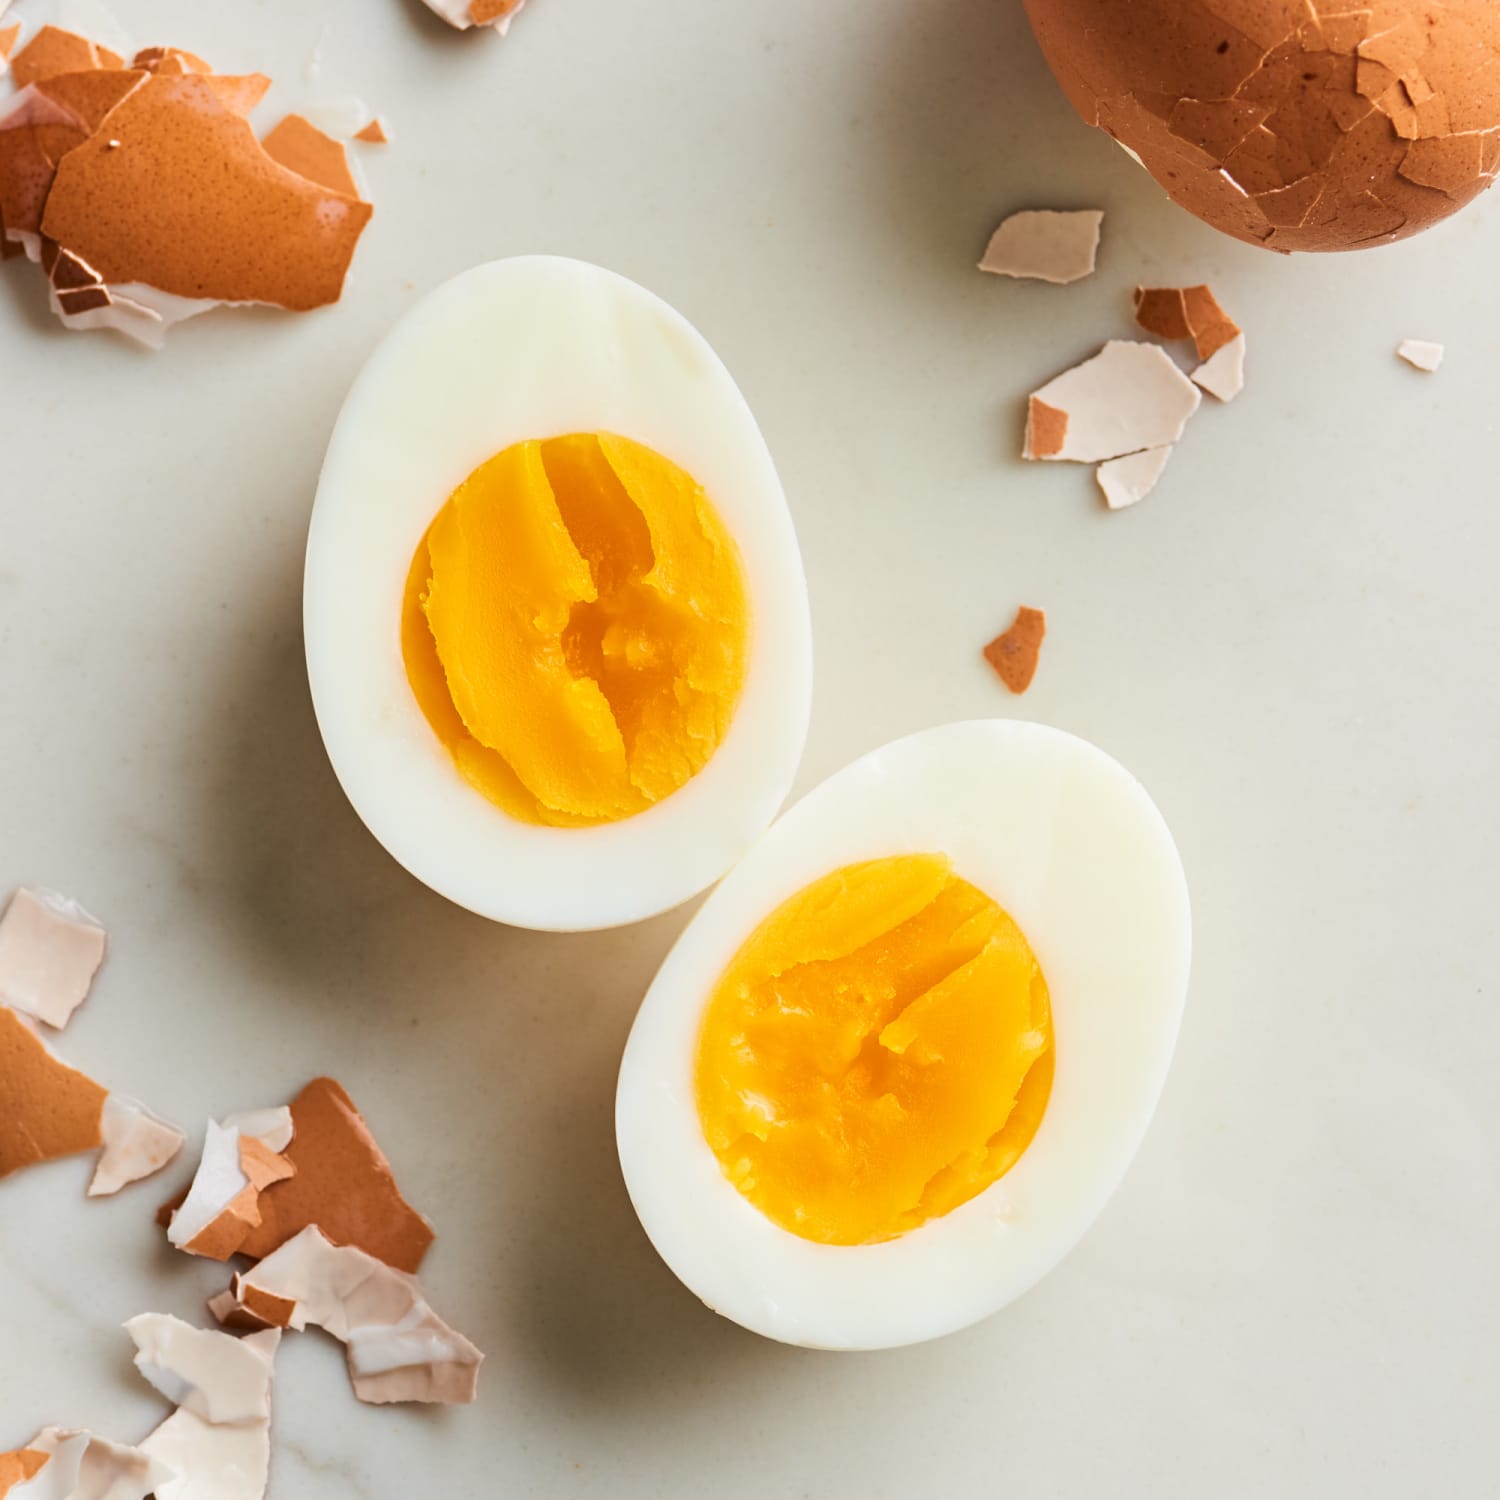 Những quan niệm sai lầm khi chế biến và ăn trứng, số 2 là thói quen khá nhiều người Việt mắc phải - Ảnh 3